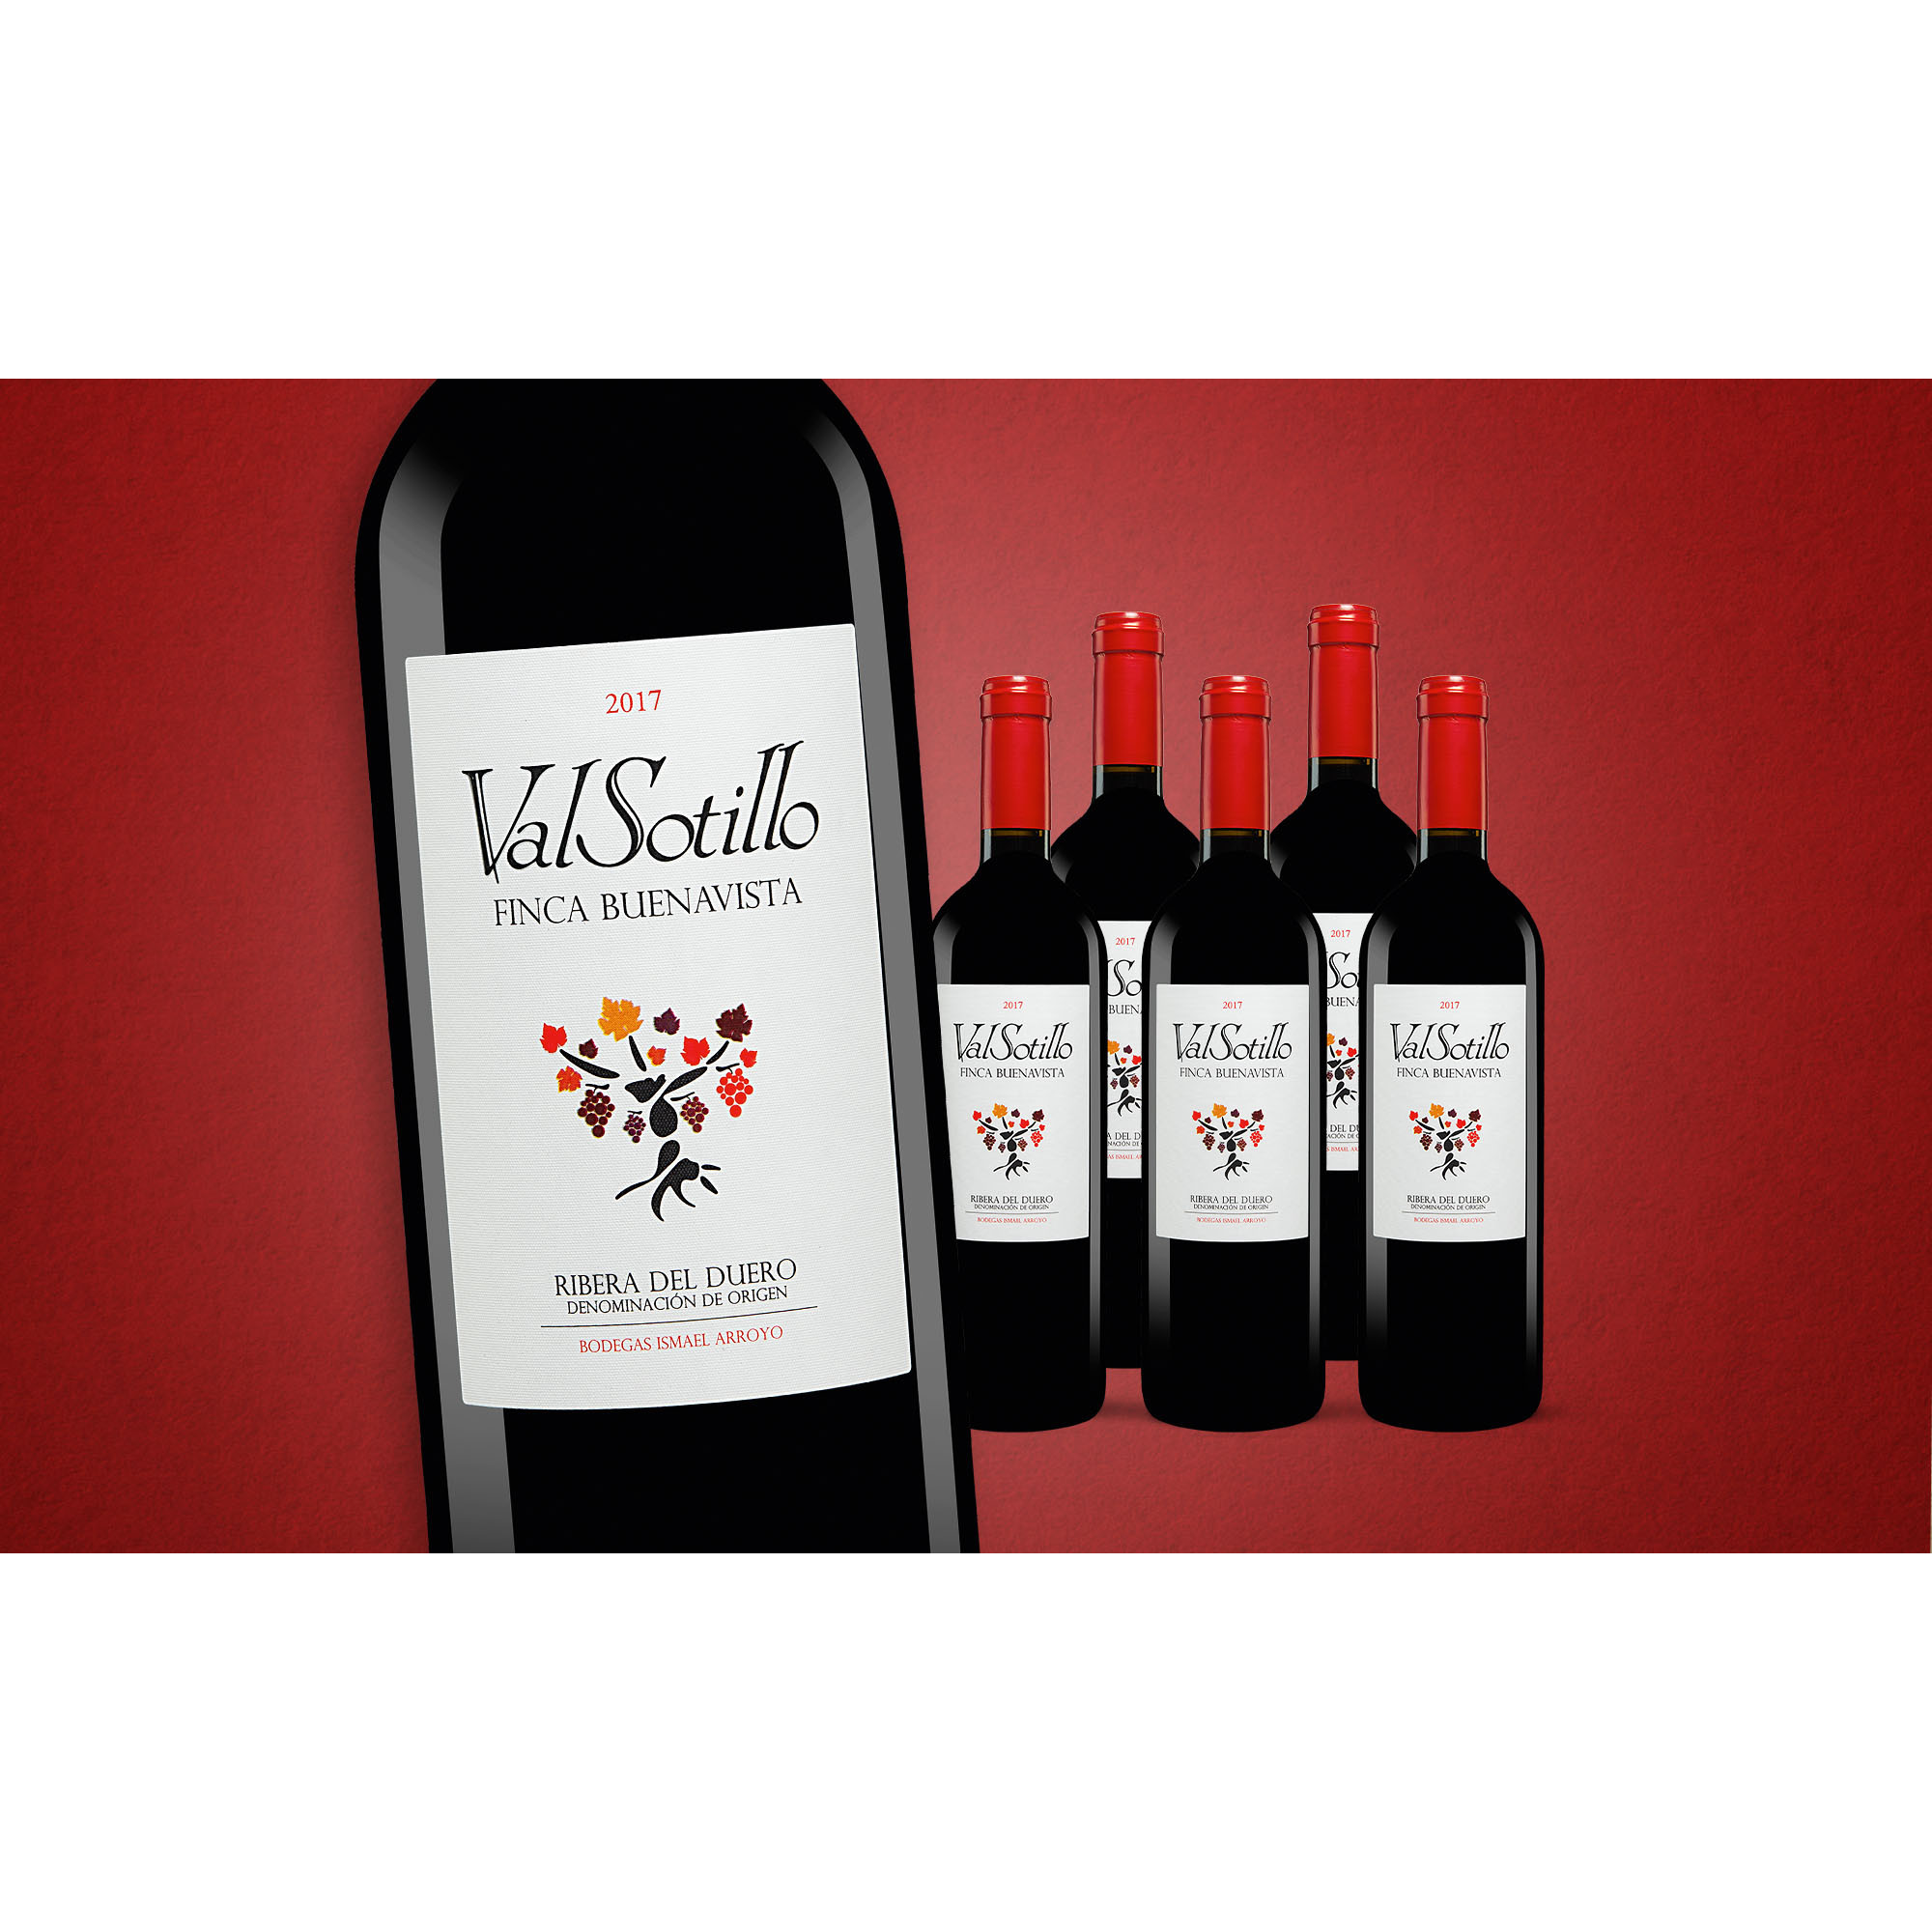 Val Sotillo »Finca Buenavista« 2017  4.5L Trocken Weinpaket aus Spanien bei Wein & Vinos